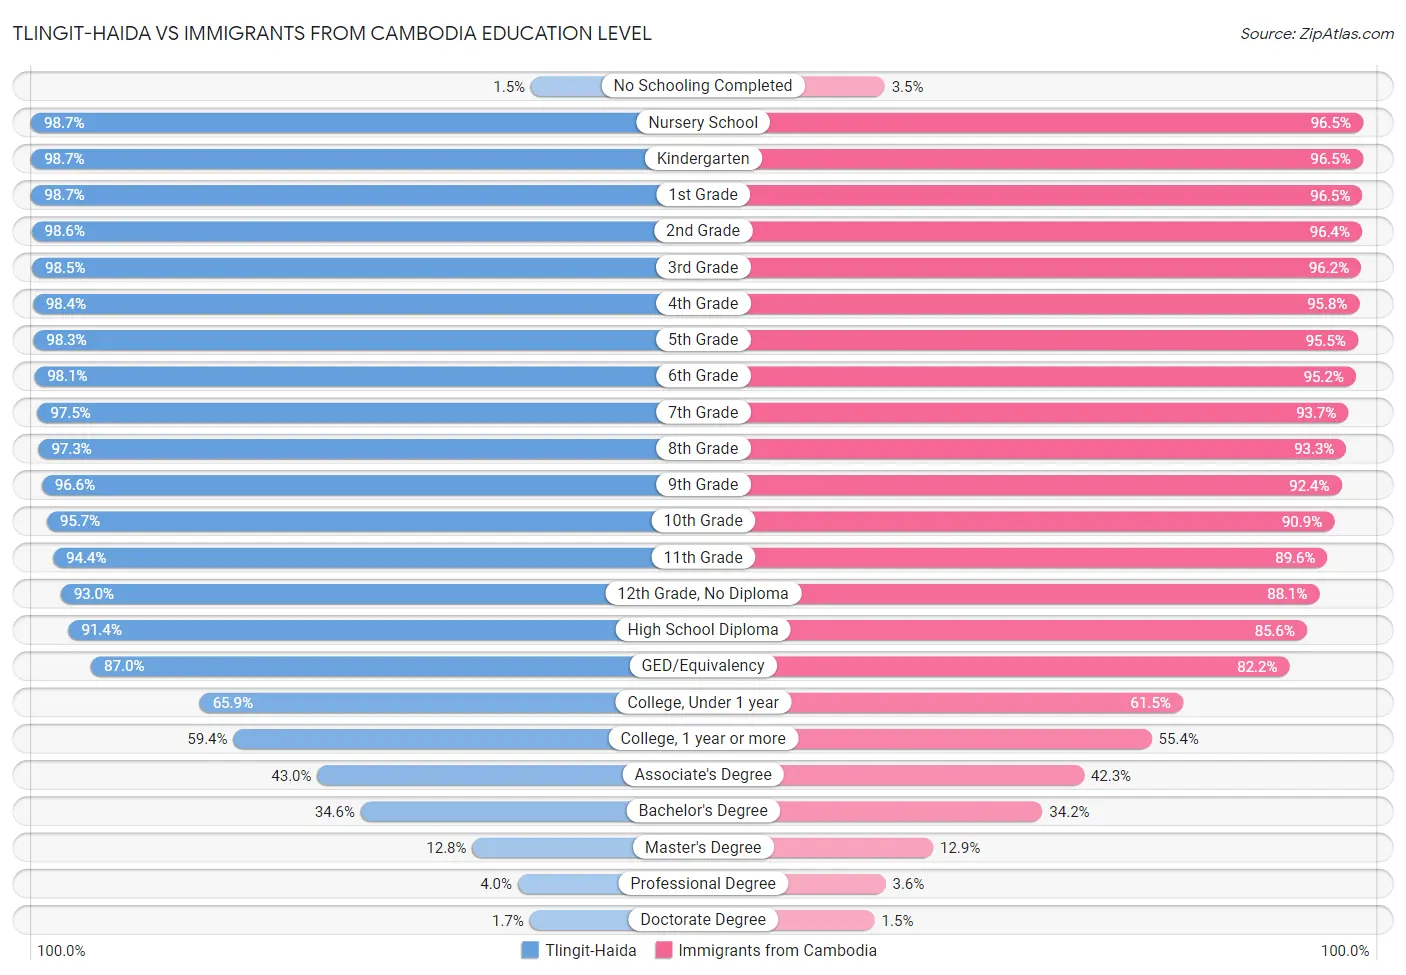 Tlingit-Haida vs Immigrants from Cambodia Education Level